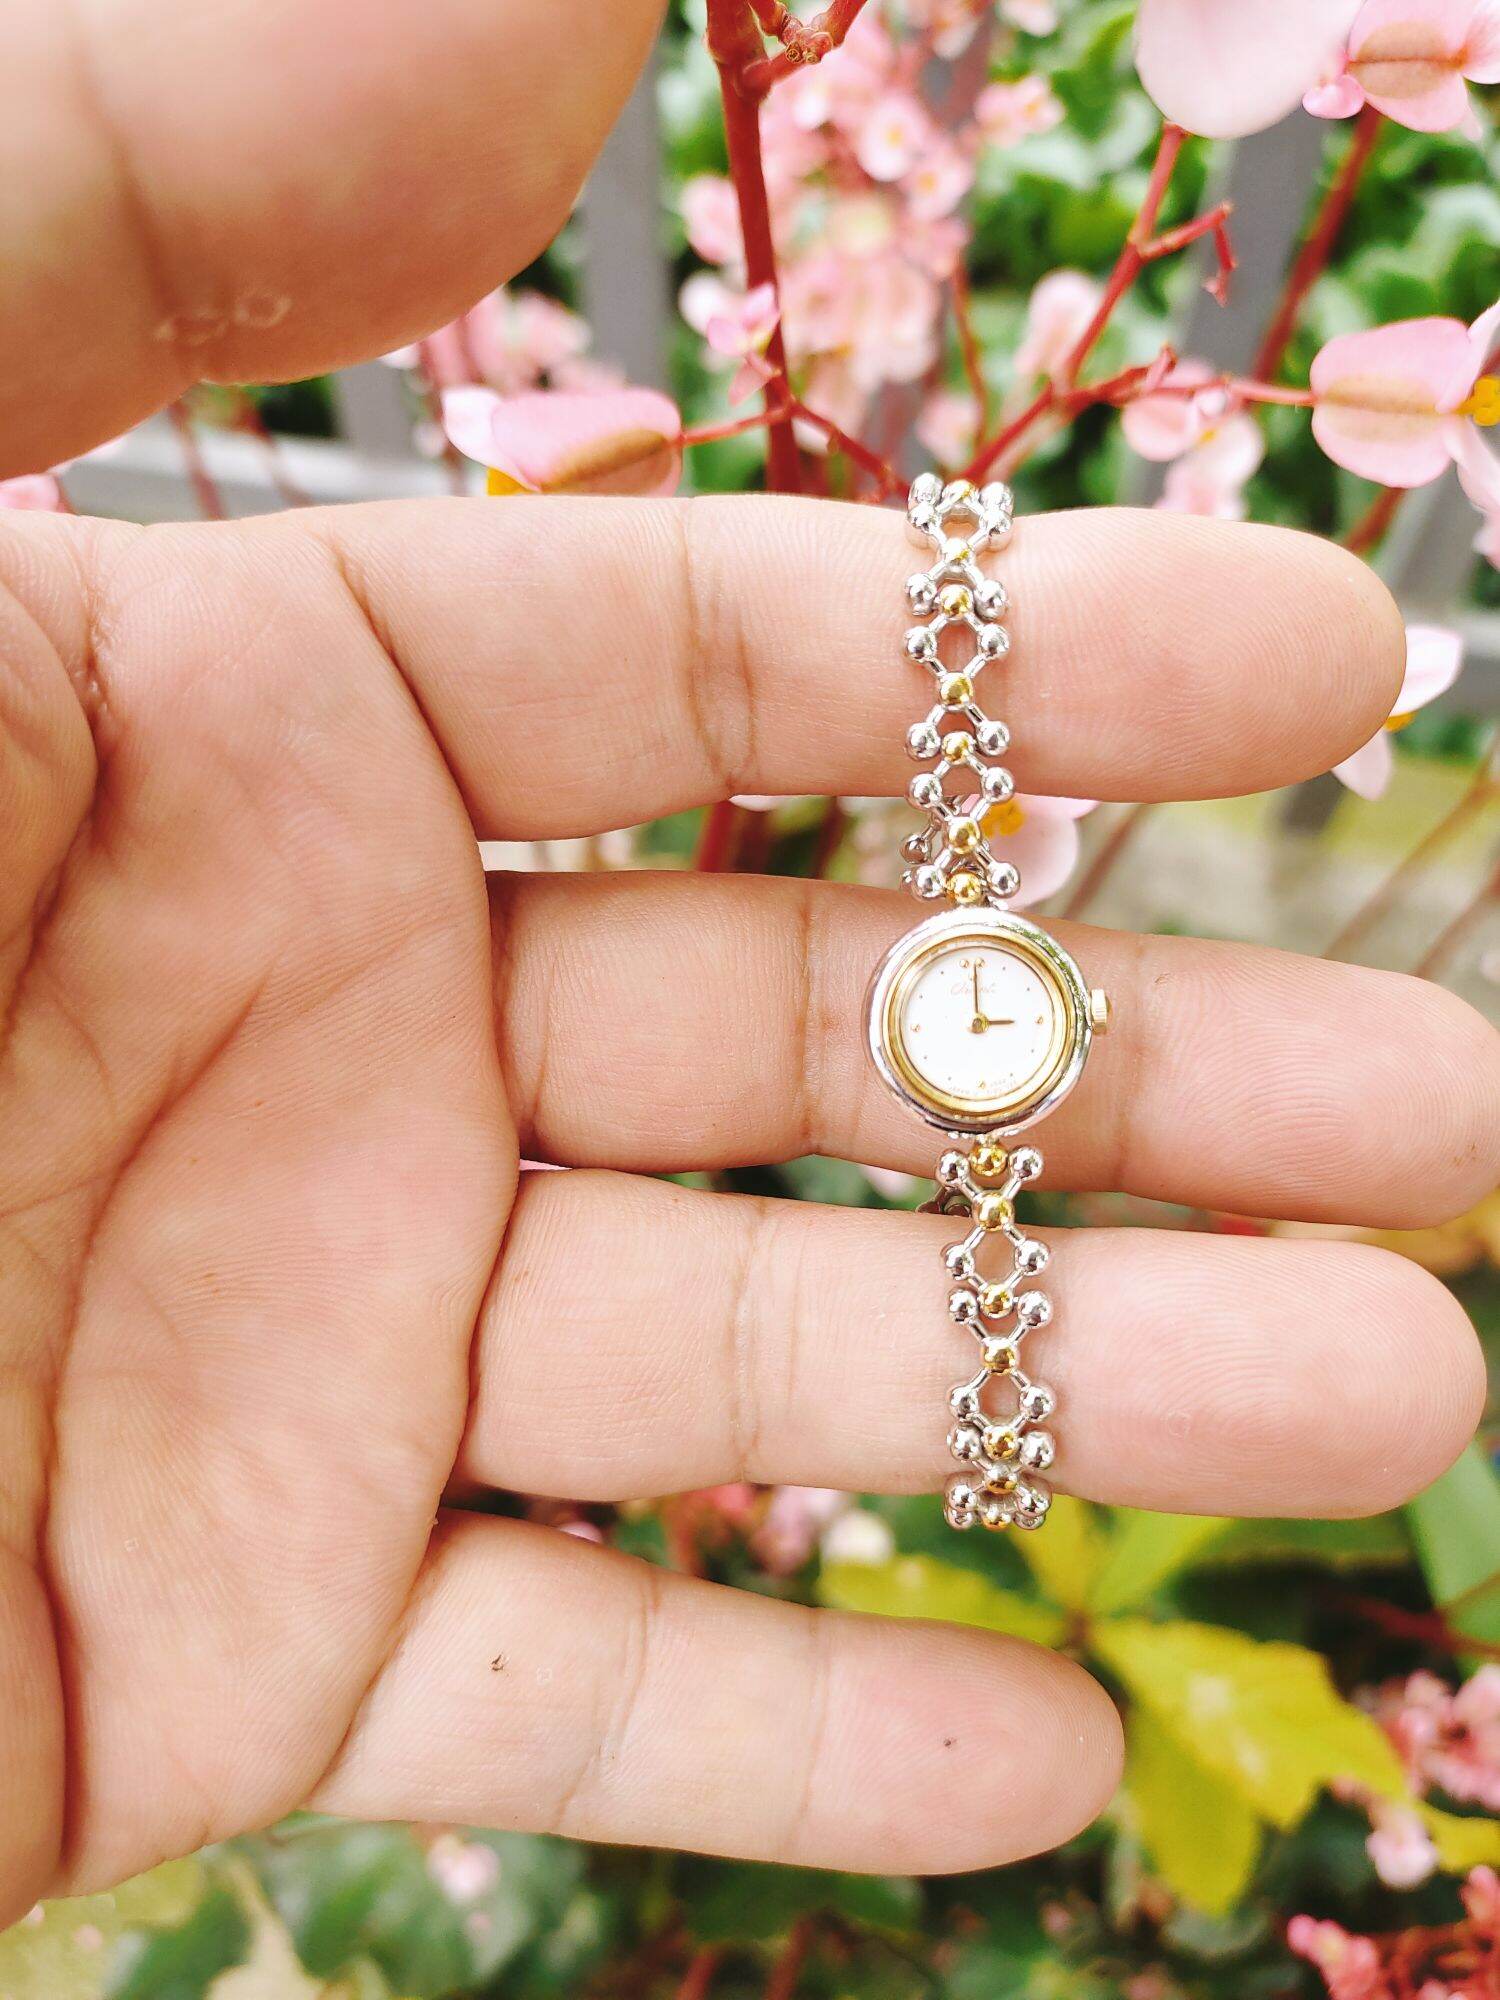 Đồng hồ Orient lắc nữ siêu đẹp, hình thức đẹp size nhỏ 14mm, cam kết hành chính hãng thumbnail